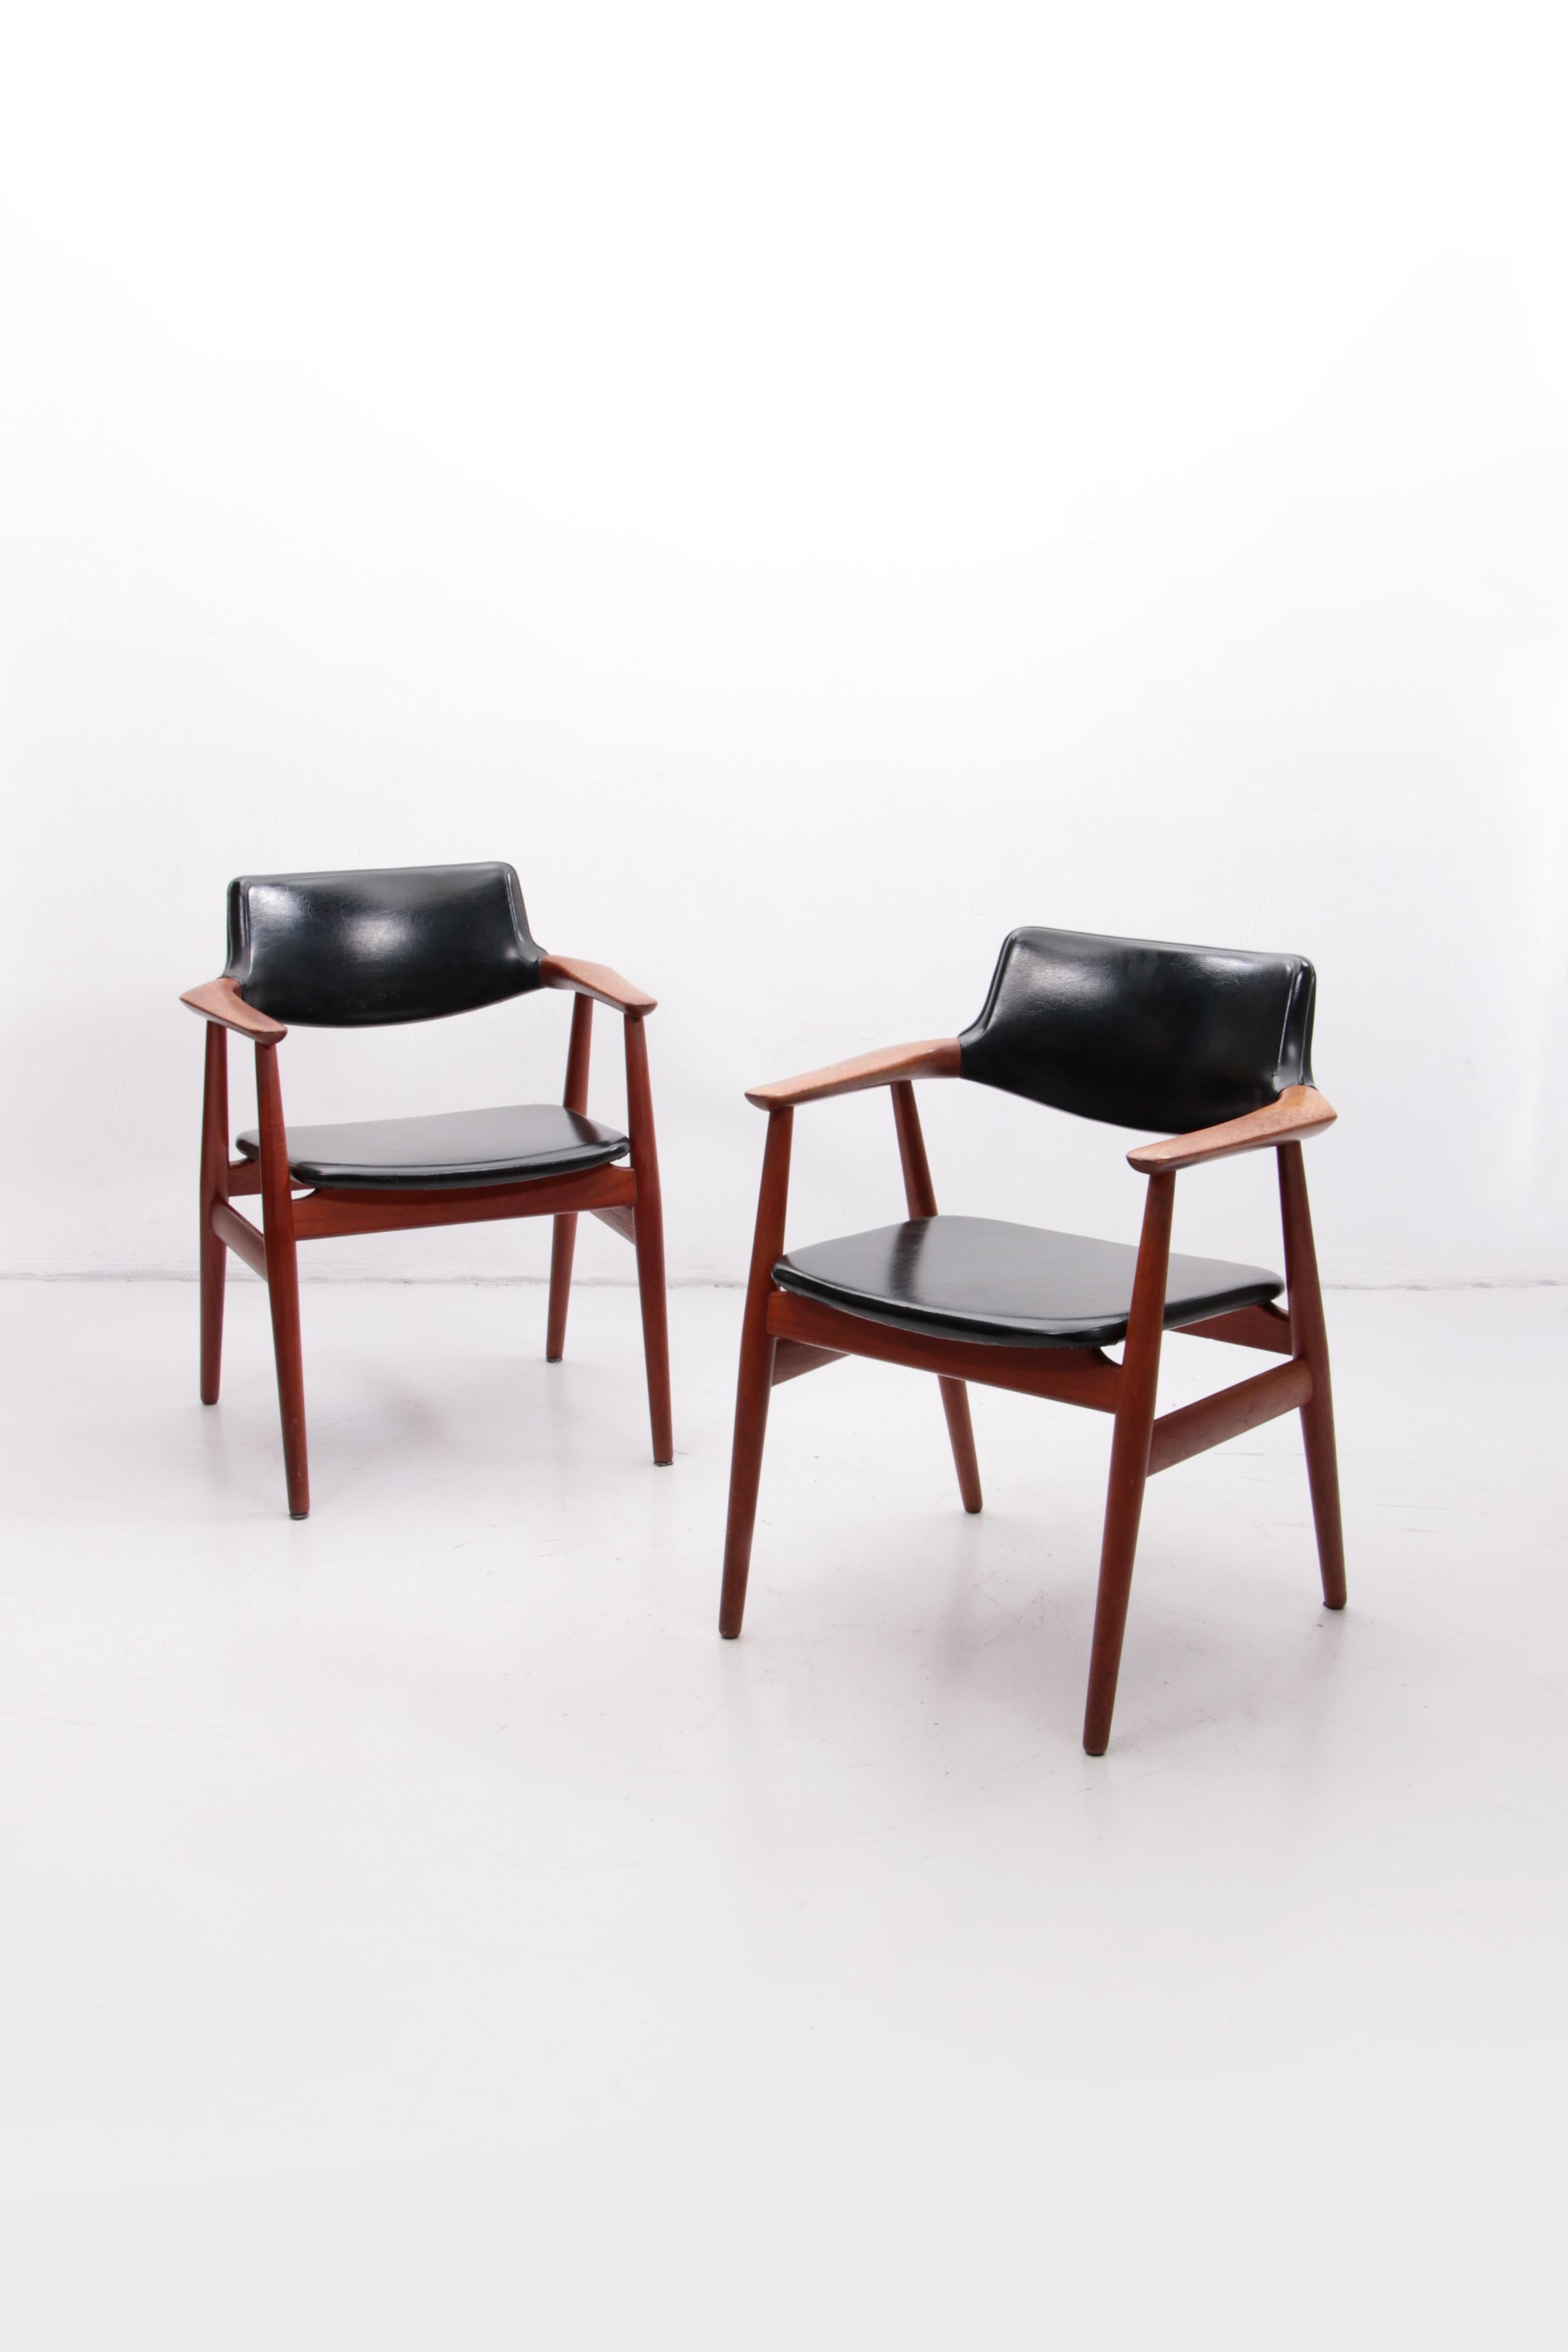 Dänische Teakholzsessel von Svend Age Eriksen für die Glostrup Møbelfabrik aus den 1960er Jahren. Die Stühle sind separat zu verkaufen.
Der Preis gilt für 1 Stuhl.
Ein schönes Stück dänisches Mid Century Design.
Dies ist das Modell GM11 in massivem